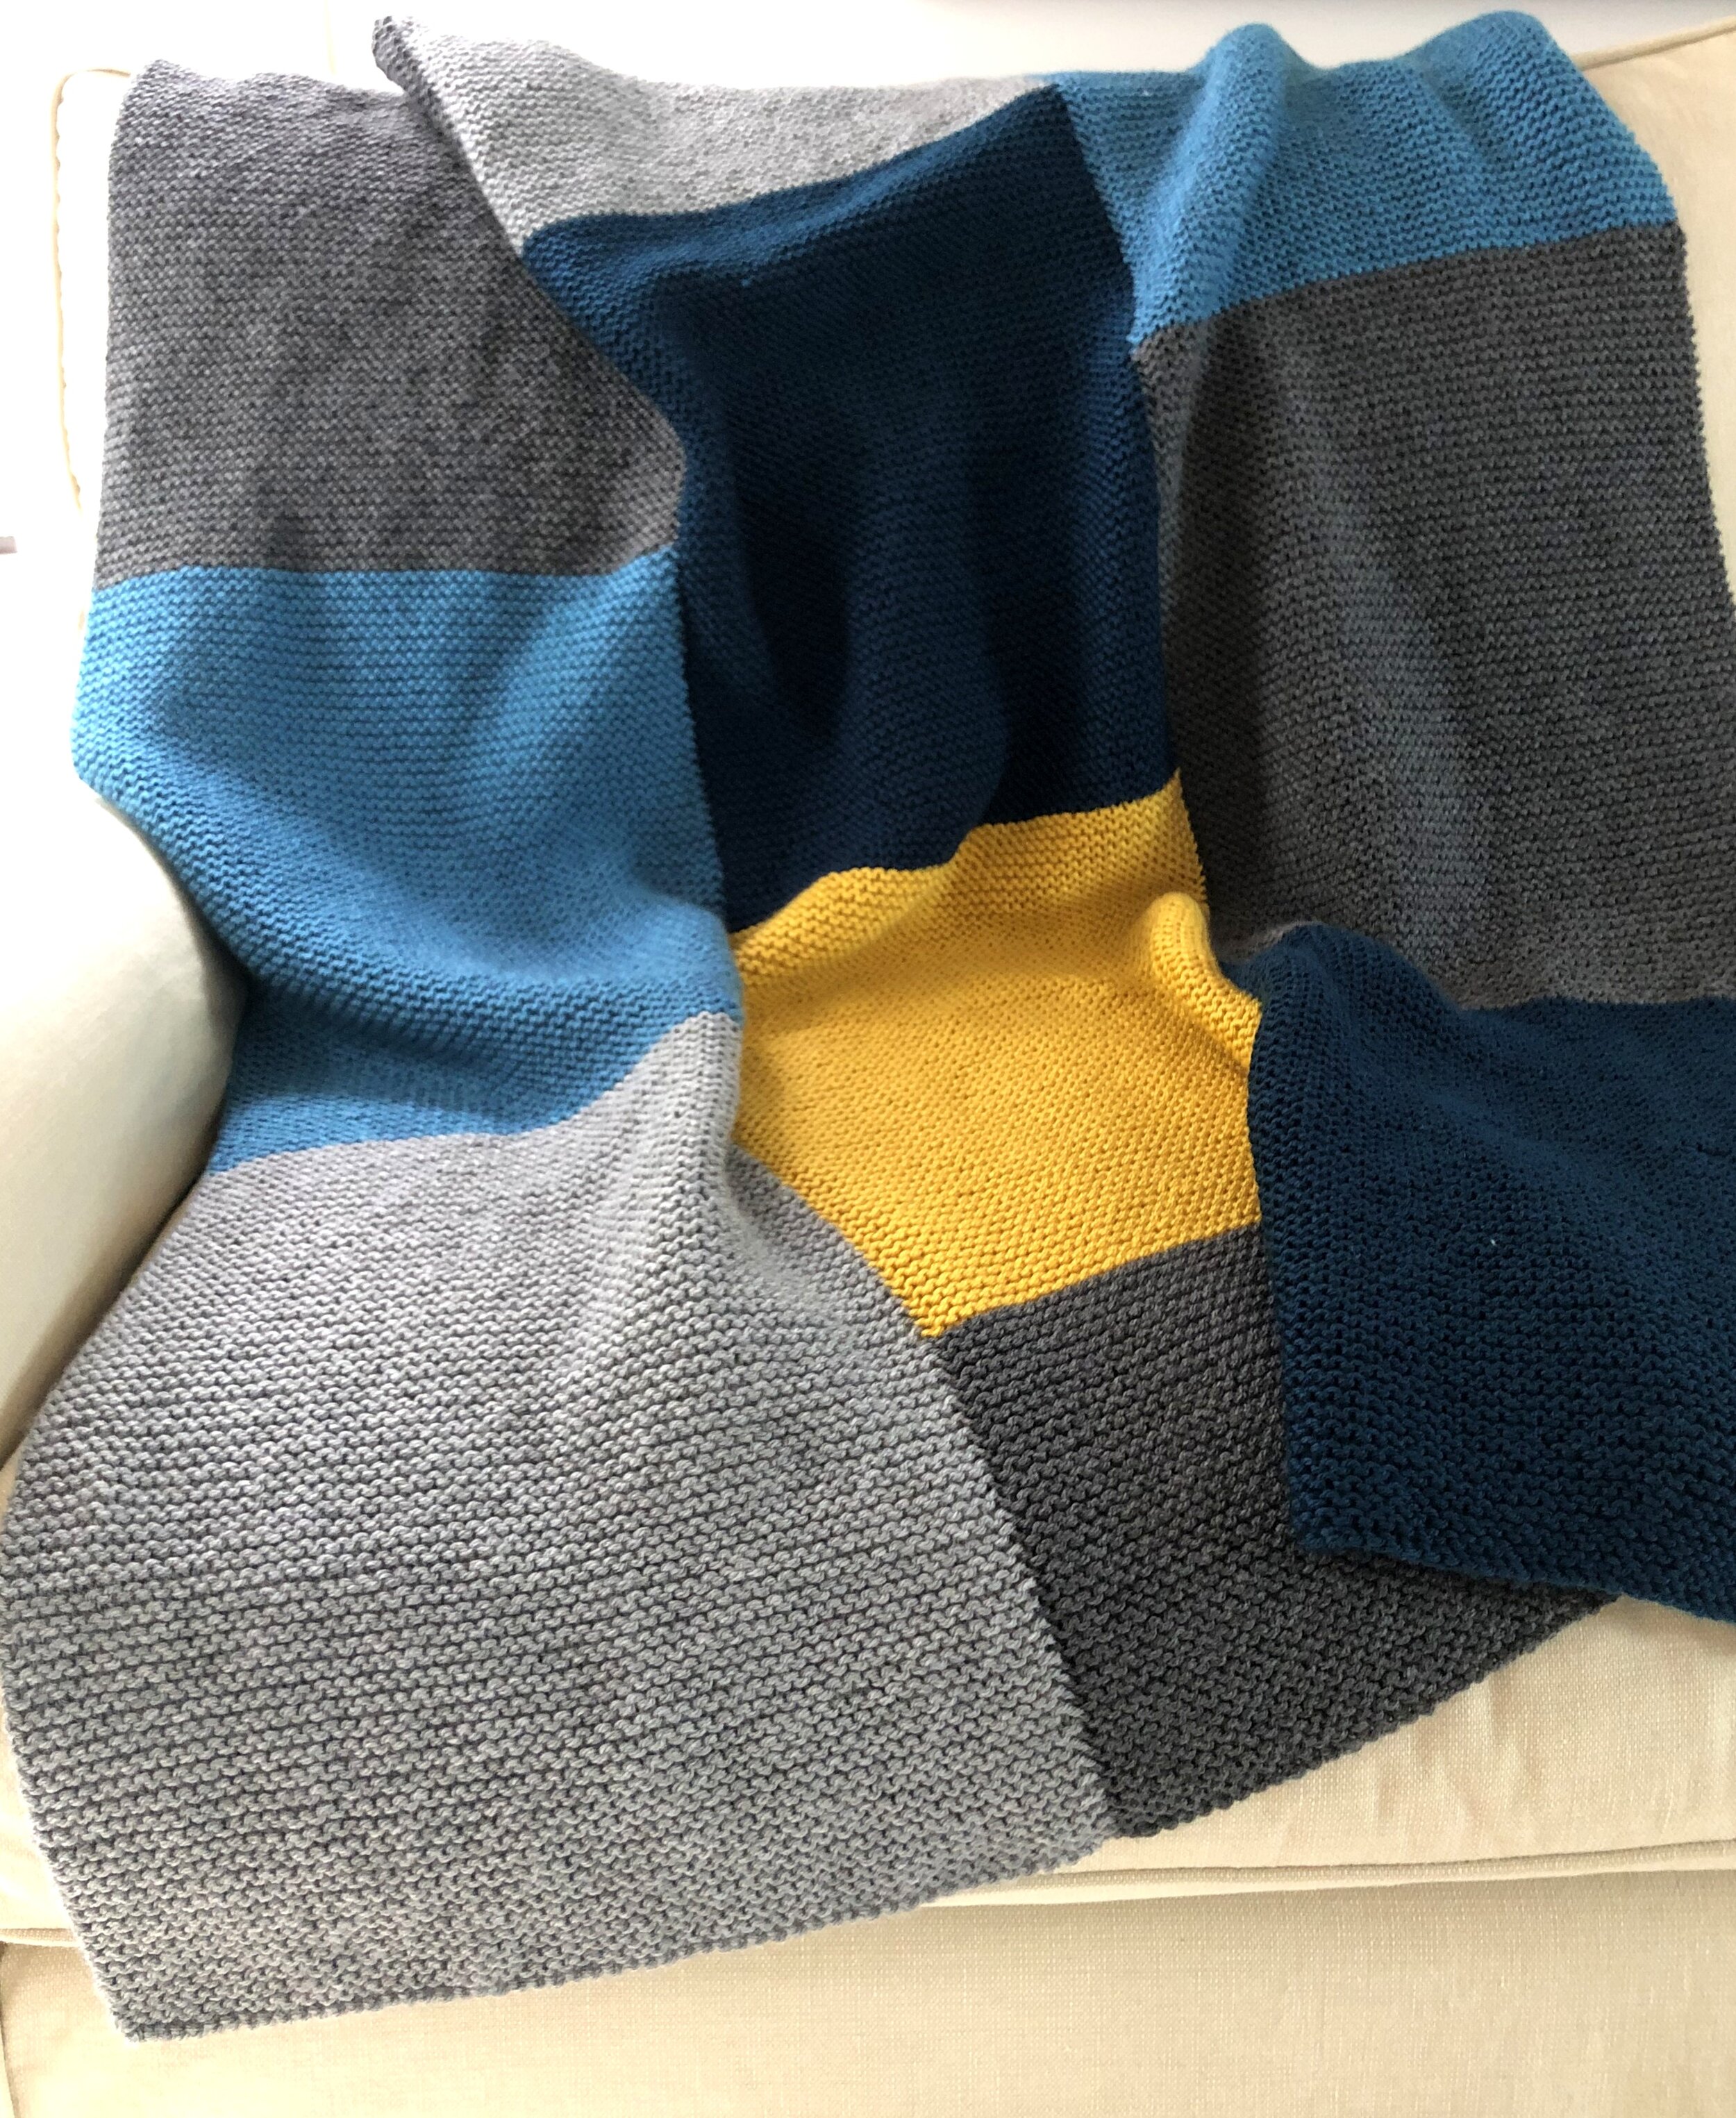 5 Stylish Blanket Knitting Kits for 2022 - Knitgrammer